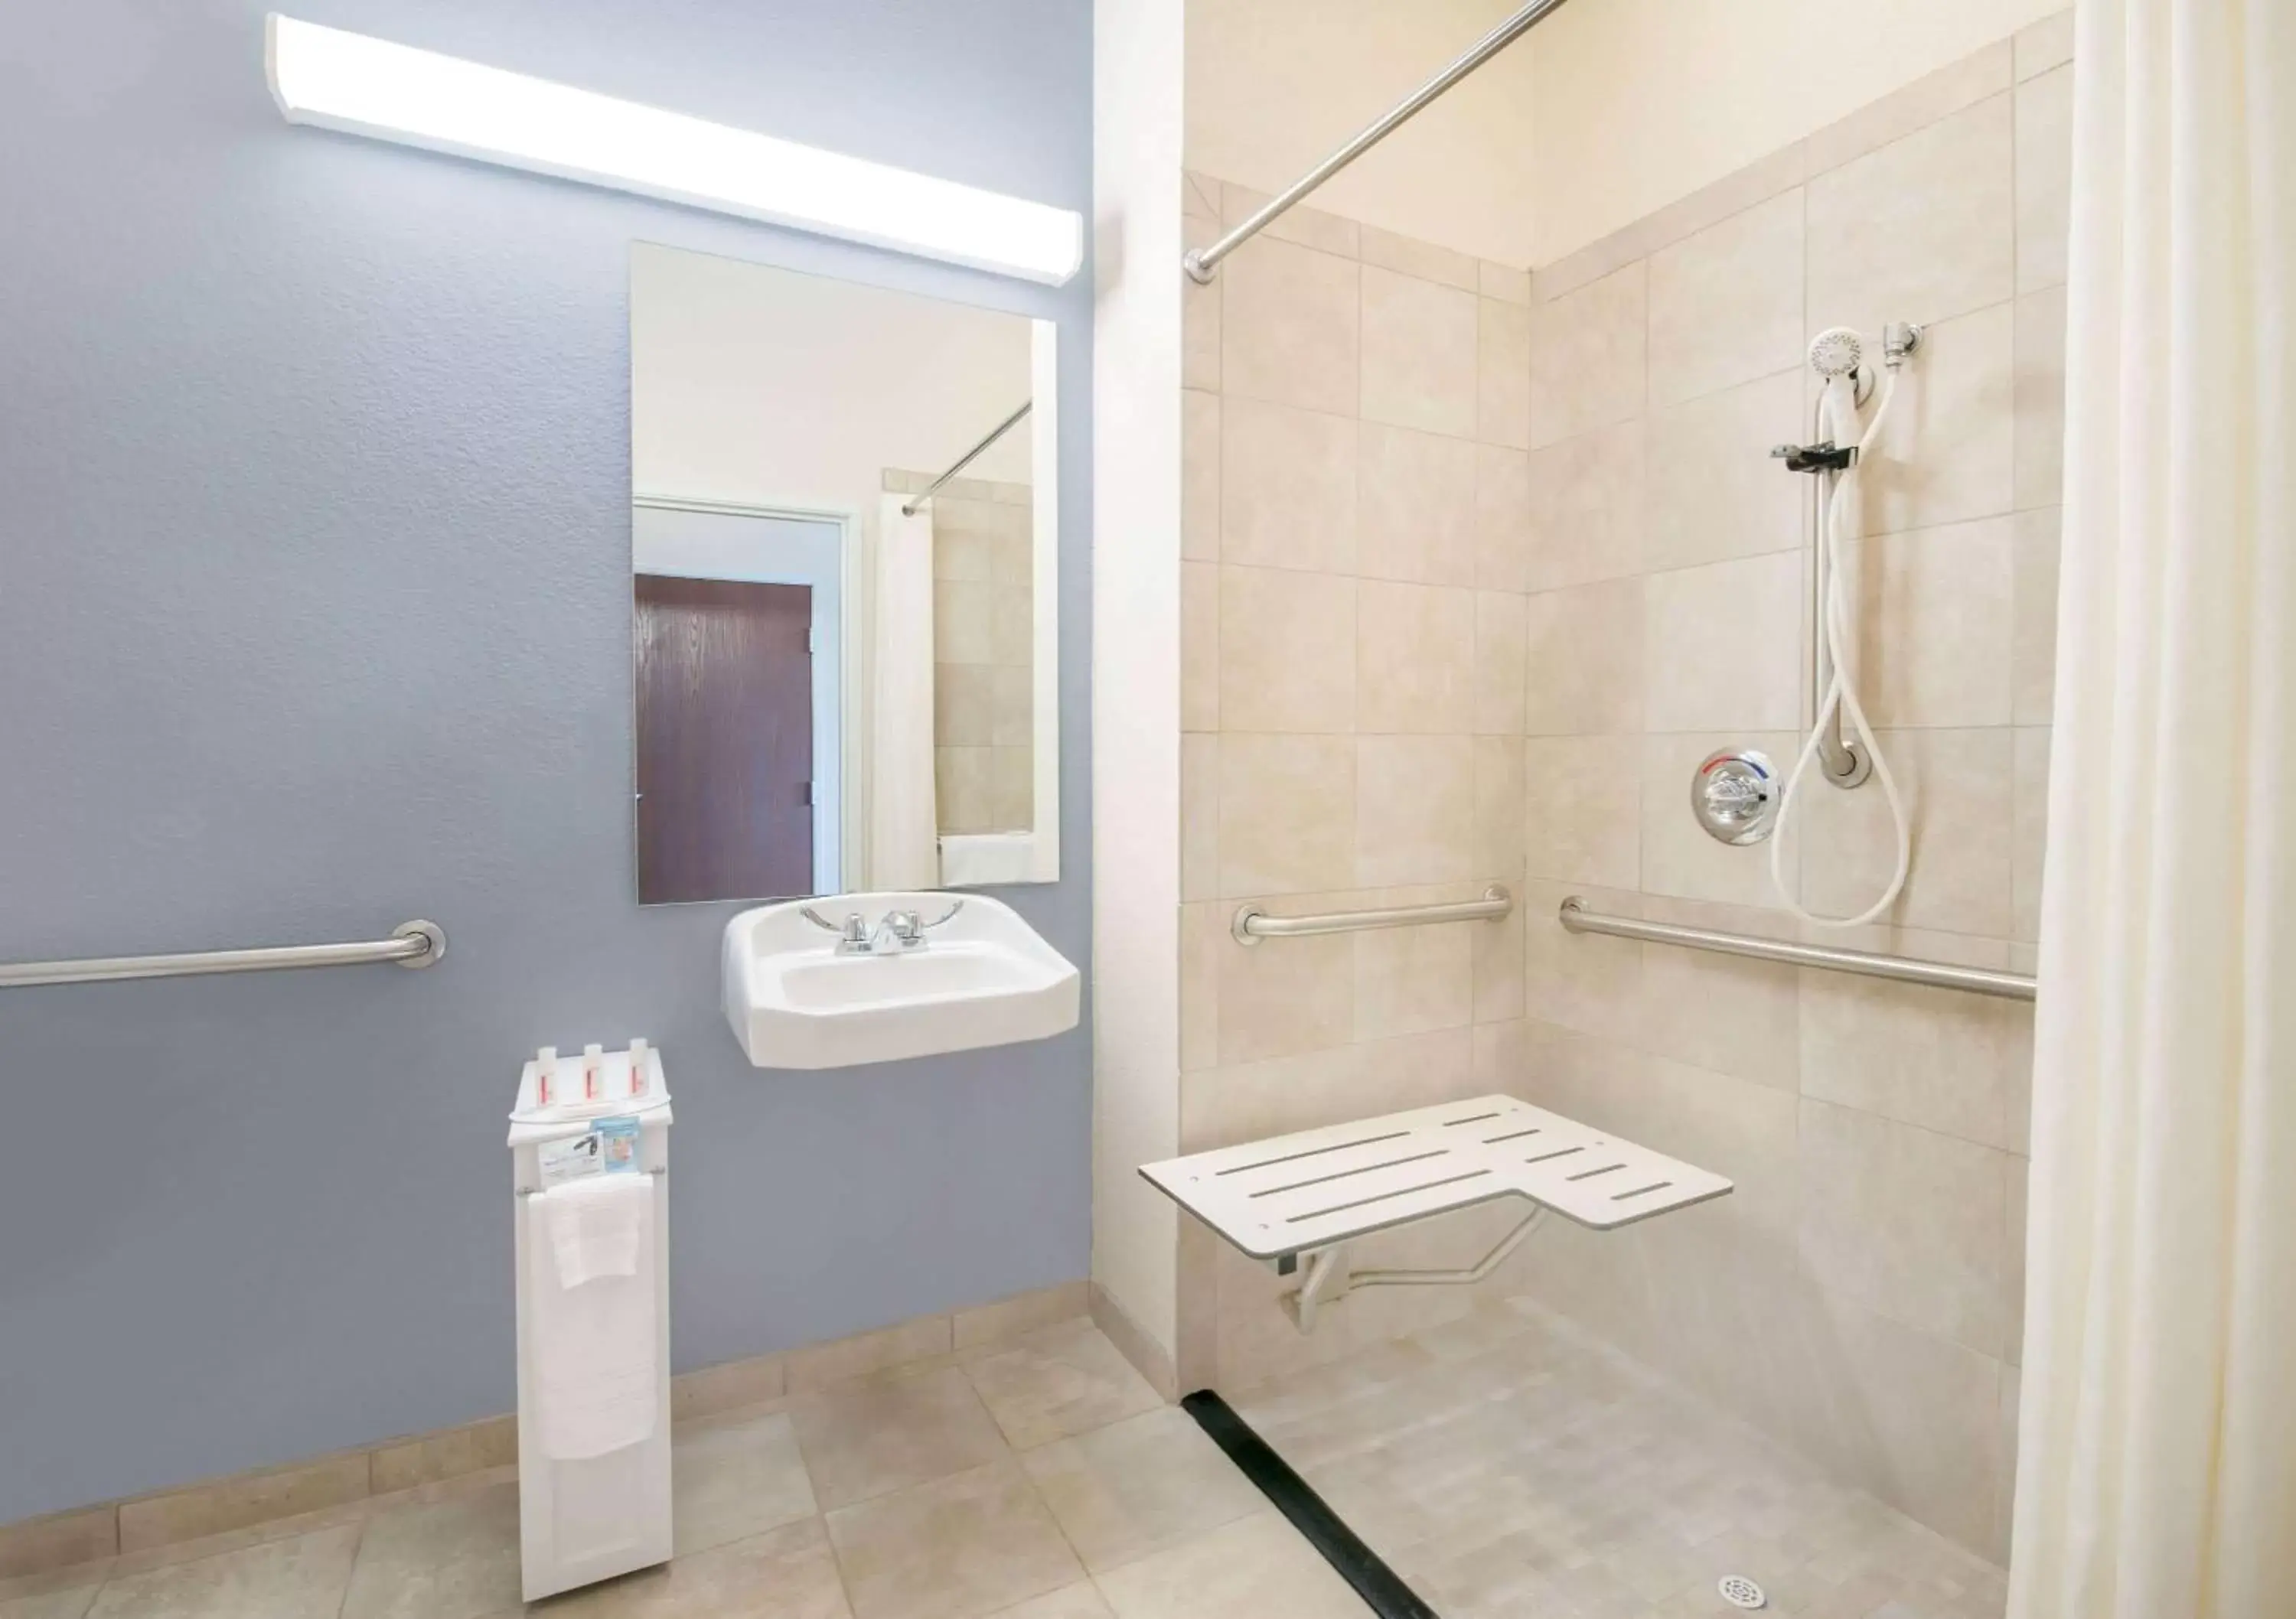 Shower, Bathroom in Microtel Inn & Suites by Wyndham Stanley